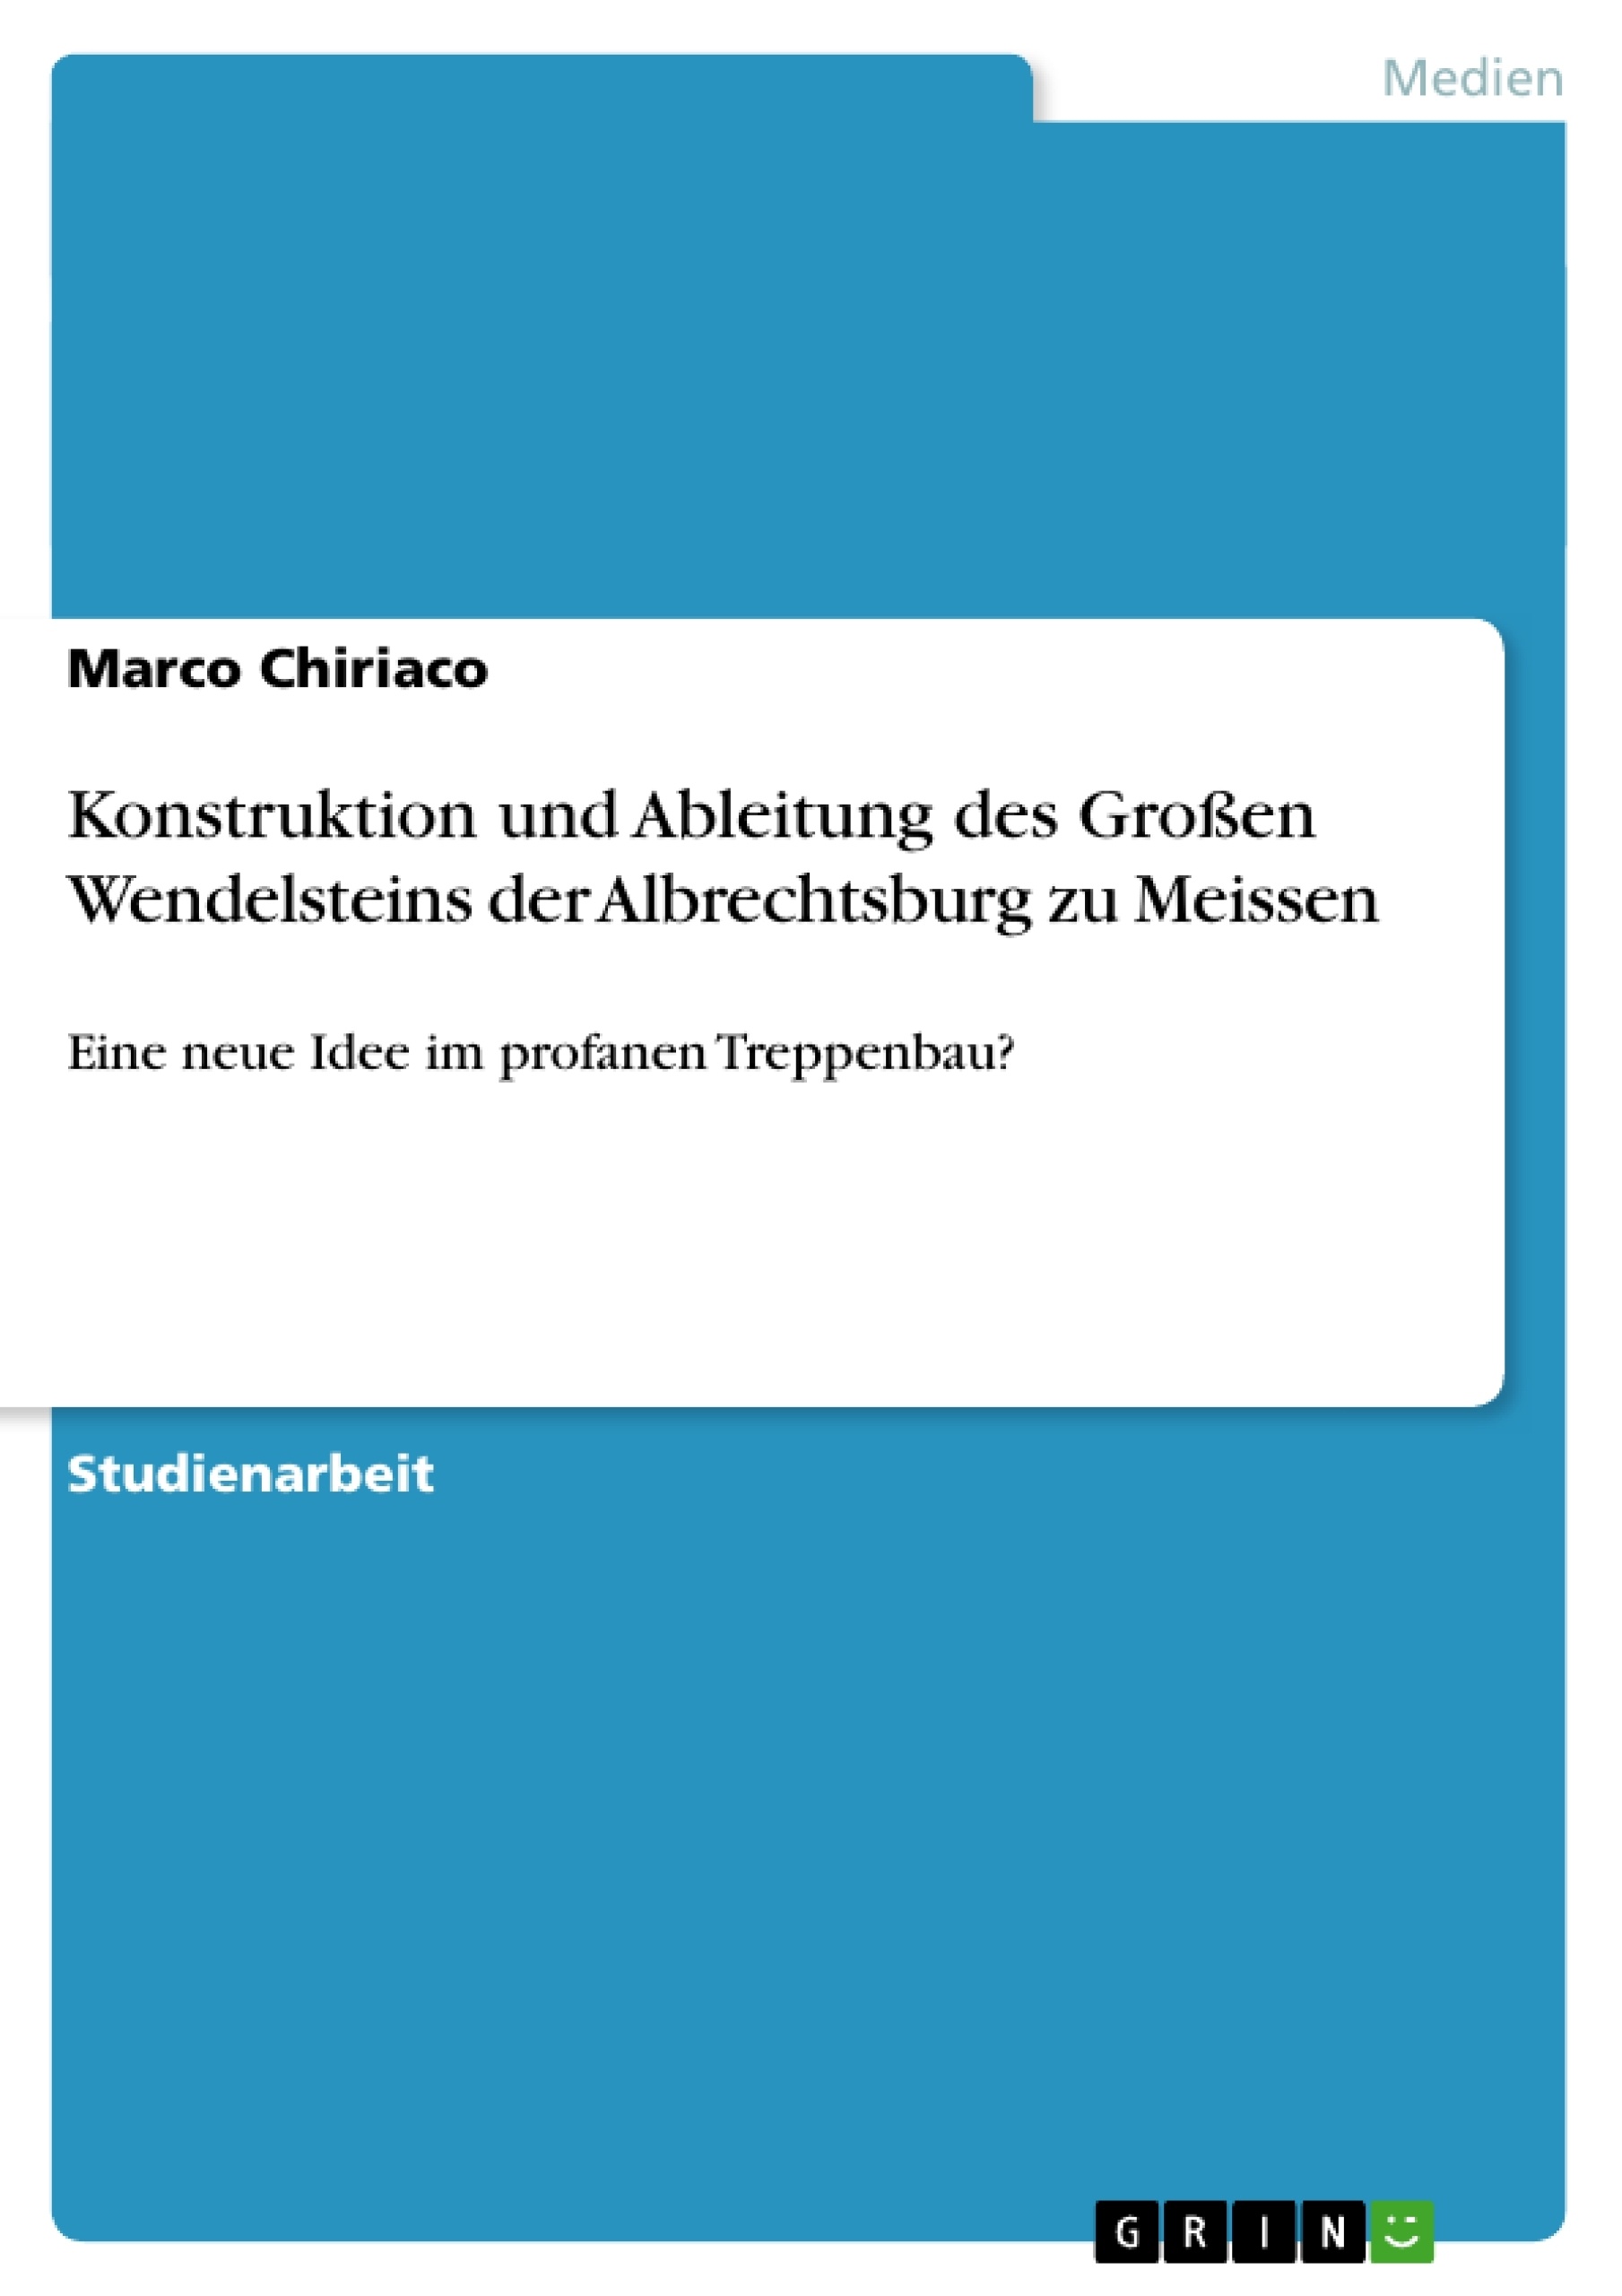 Titre: Konstruktion und Ableitung des Großen Wendelsteins der Albrechtsburg zu Meissen